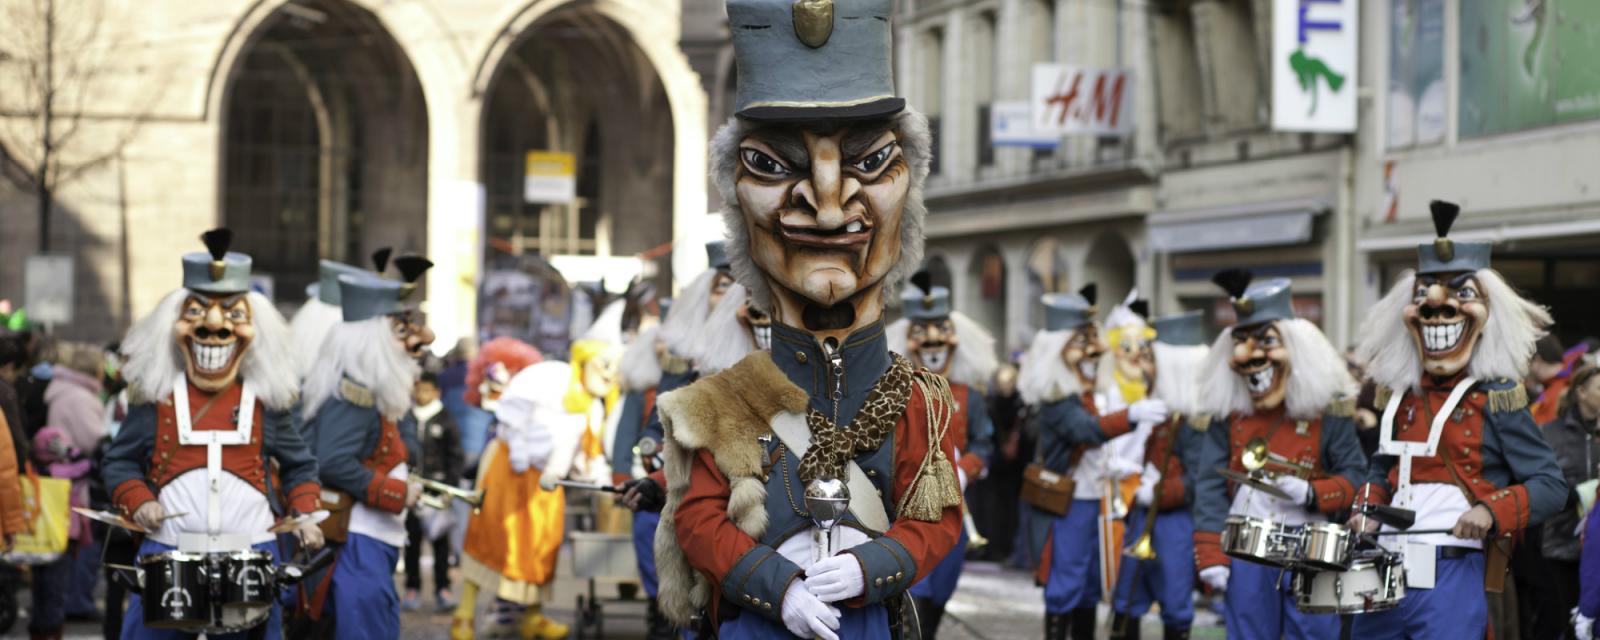 5x Carnaval vieren in Zwitserland 